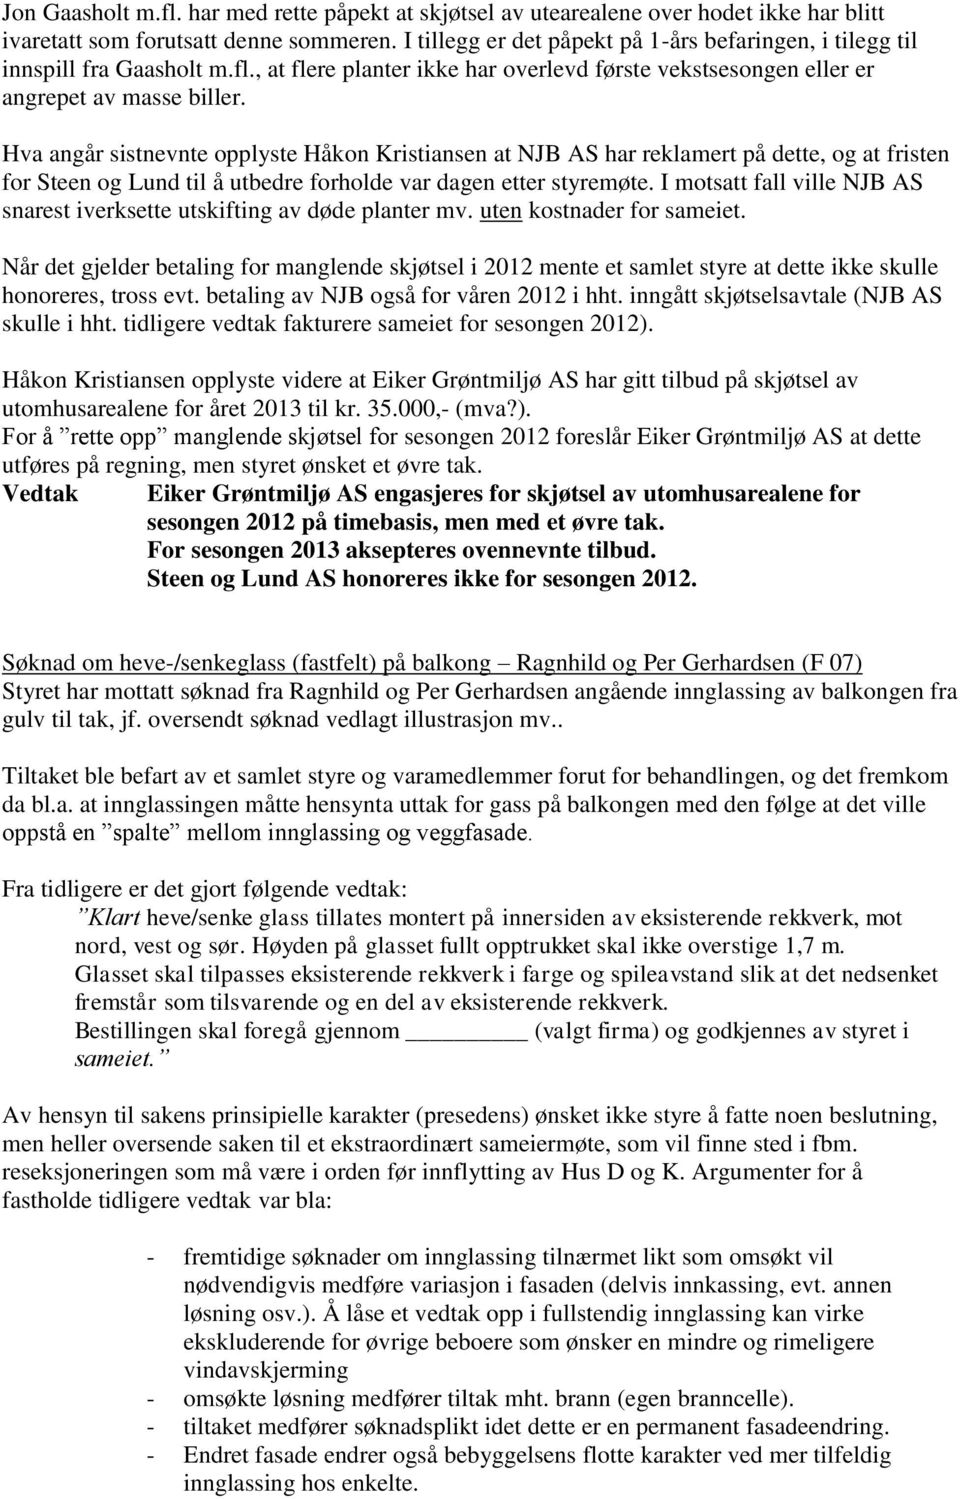 Hva angår sistnevnte opplyste Håkon Kristiansen at NJB AS har reklamert på dette, og at fristen for Steen og Lund til å utbedre forholde var dagen etter styremøte.